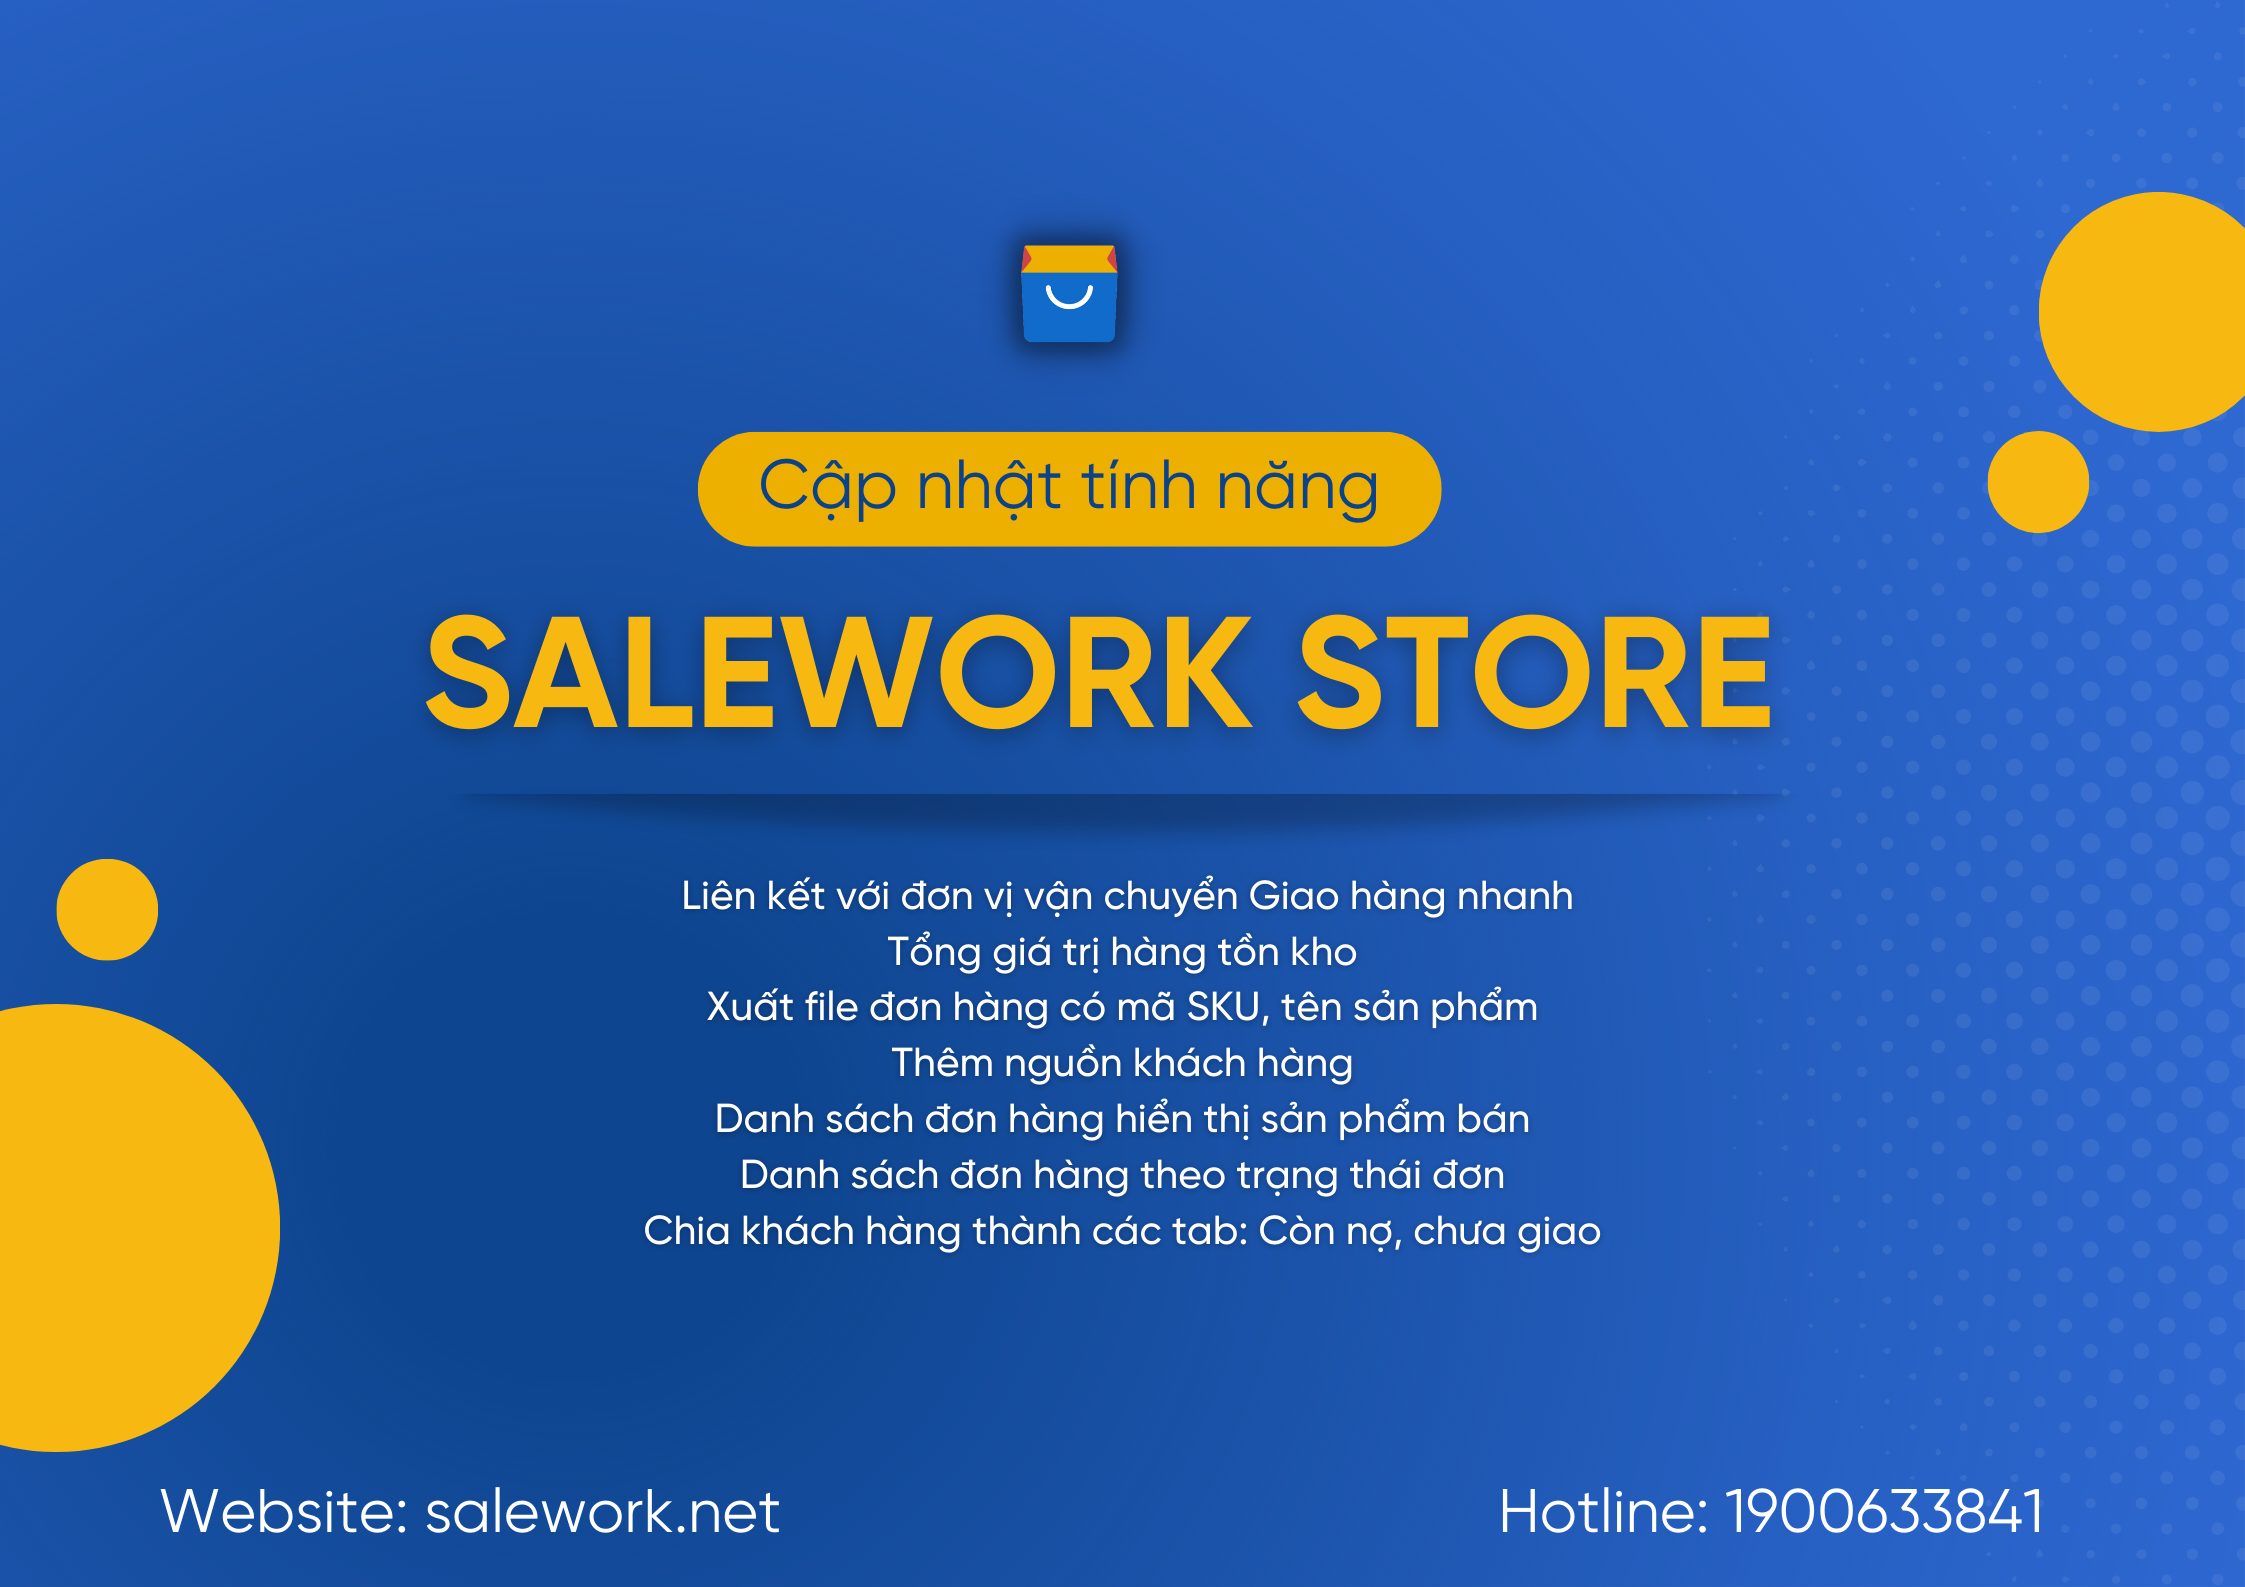 [ Thông báo] Salework Store cập nhật phần mềm - 64